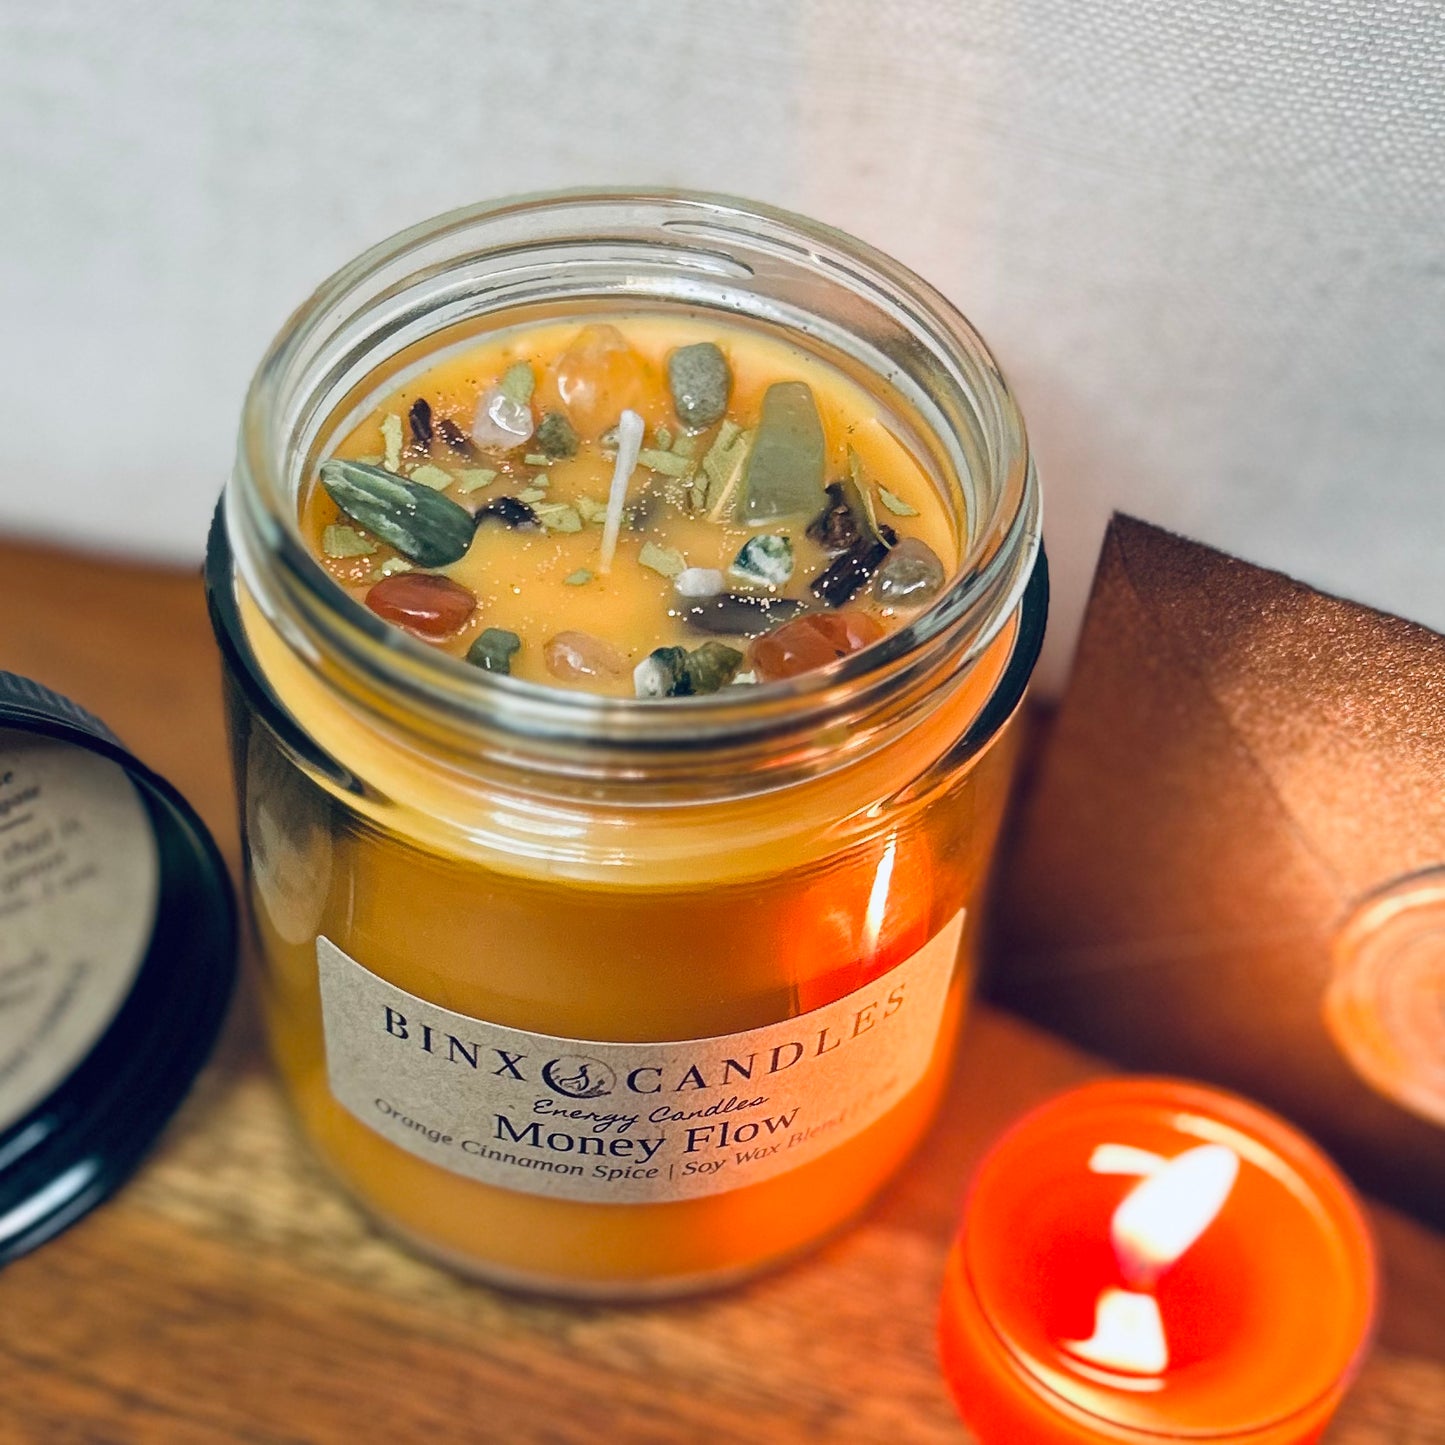 Money Flow Energy Candle | Orange Cinnamon Spice | 7oz